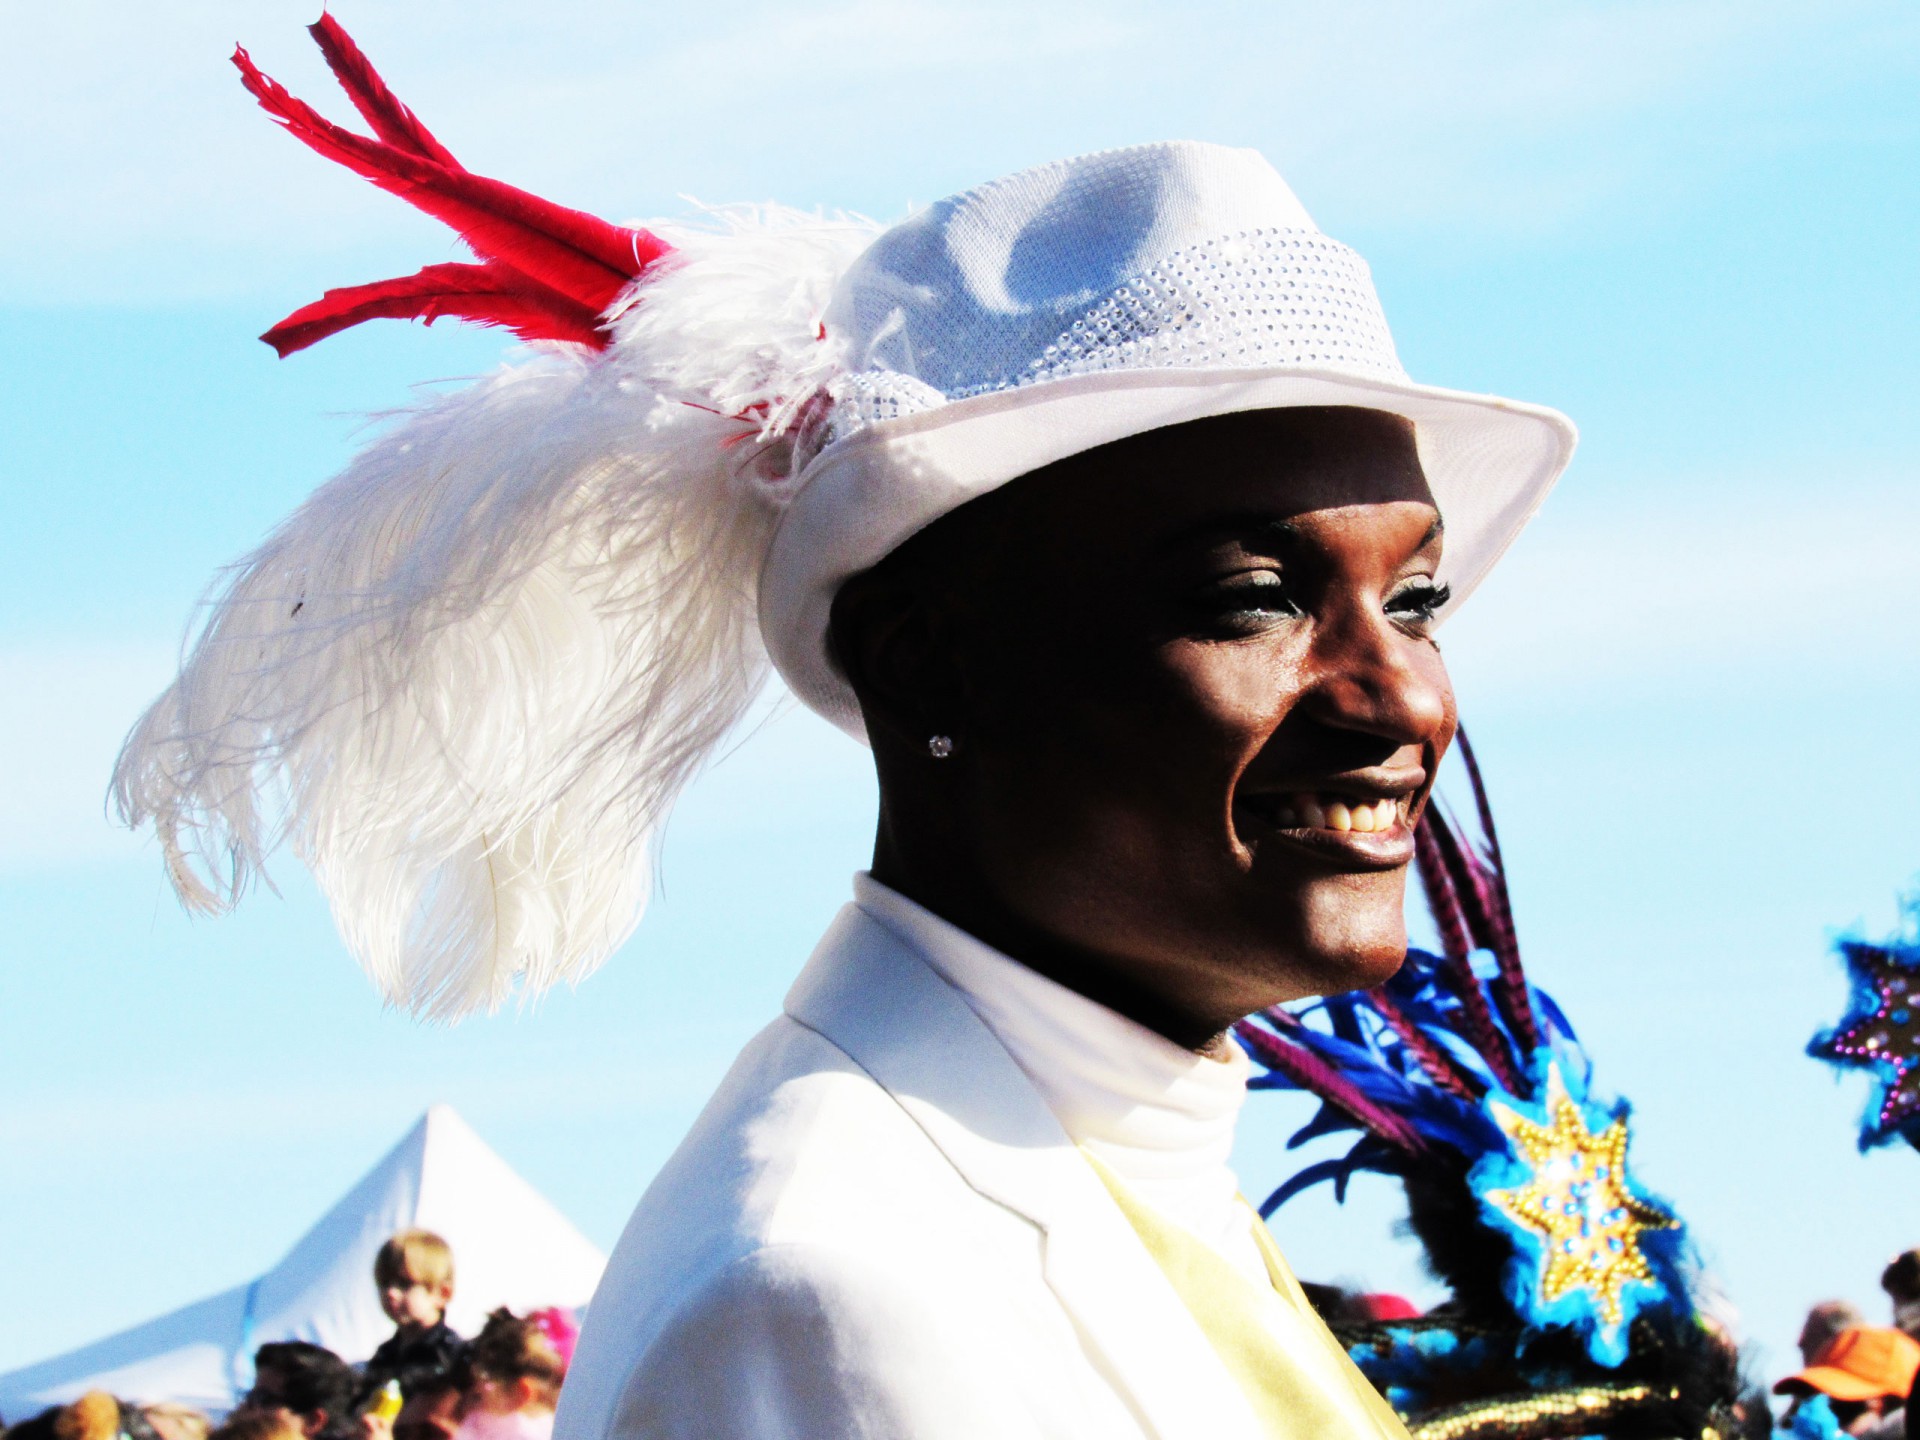 Carnaval de Nice 2016: Le Roi des Médias. COMPAGNIE CORPS ET DANSE. + de VIDÉOS !!! Février 2016. Défilé Carnavalesque, Danse Latino